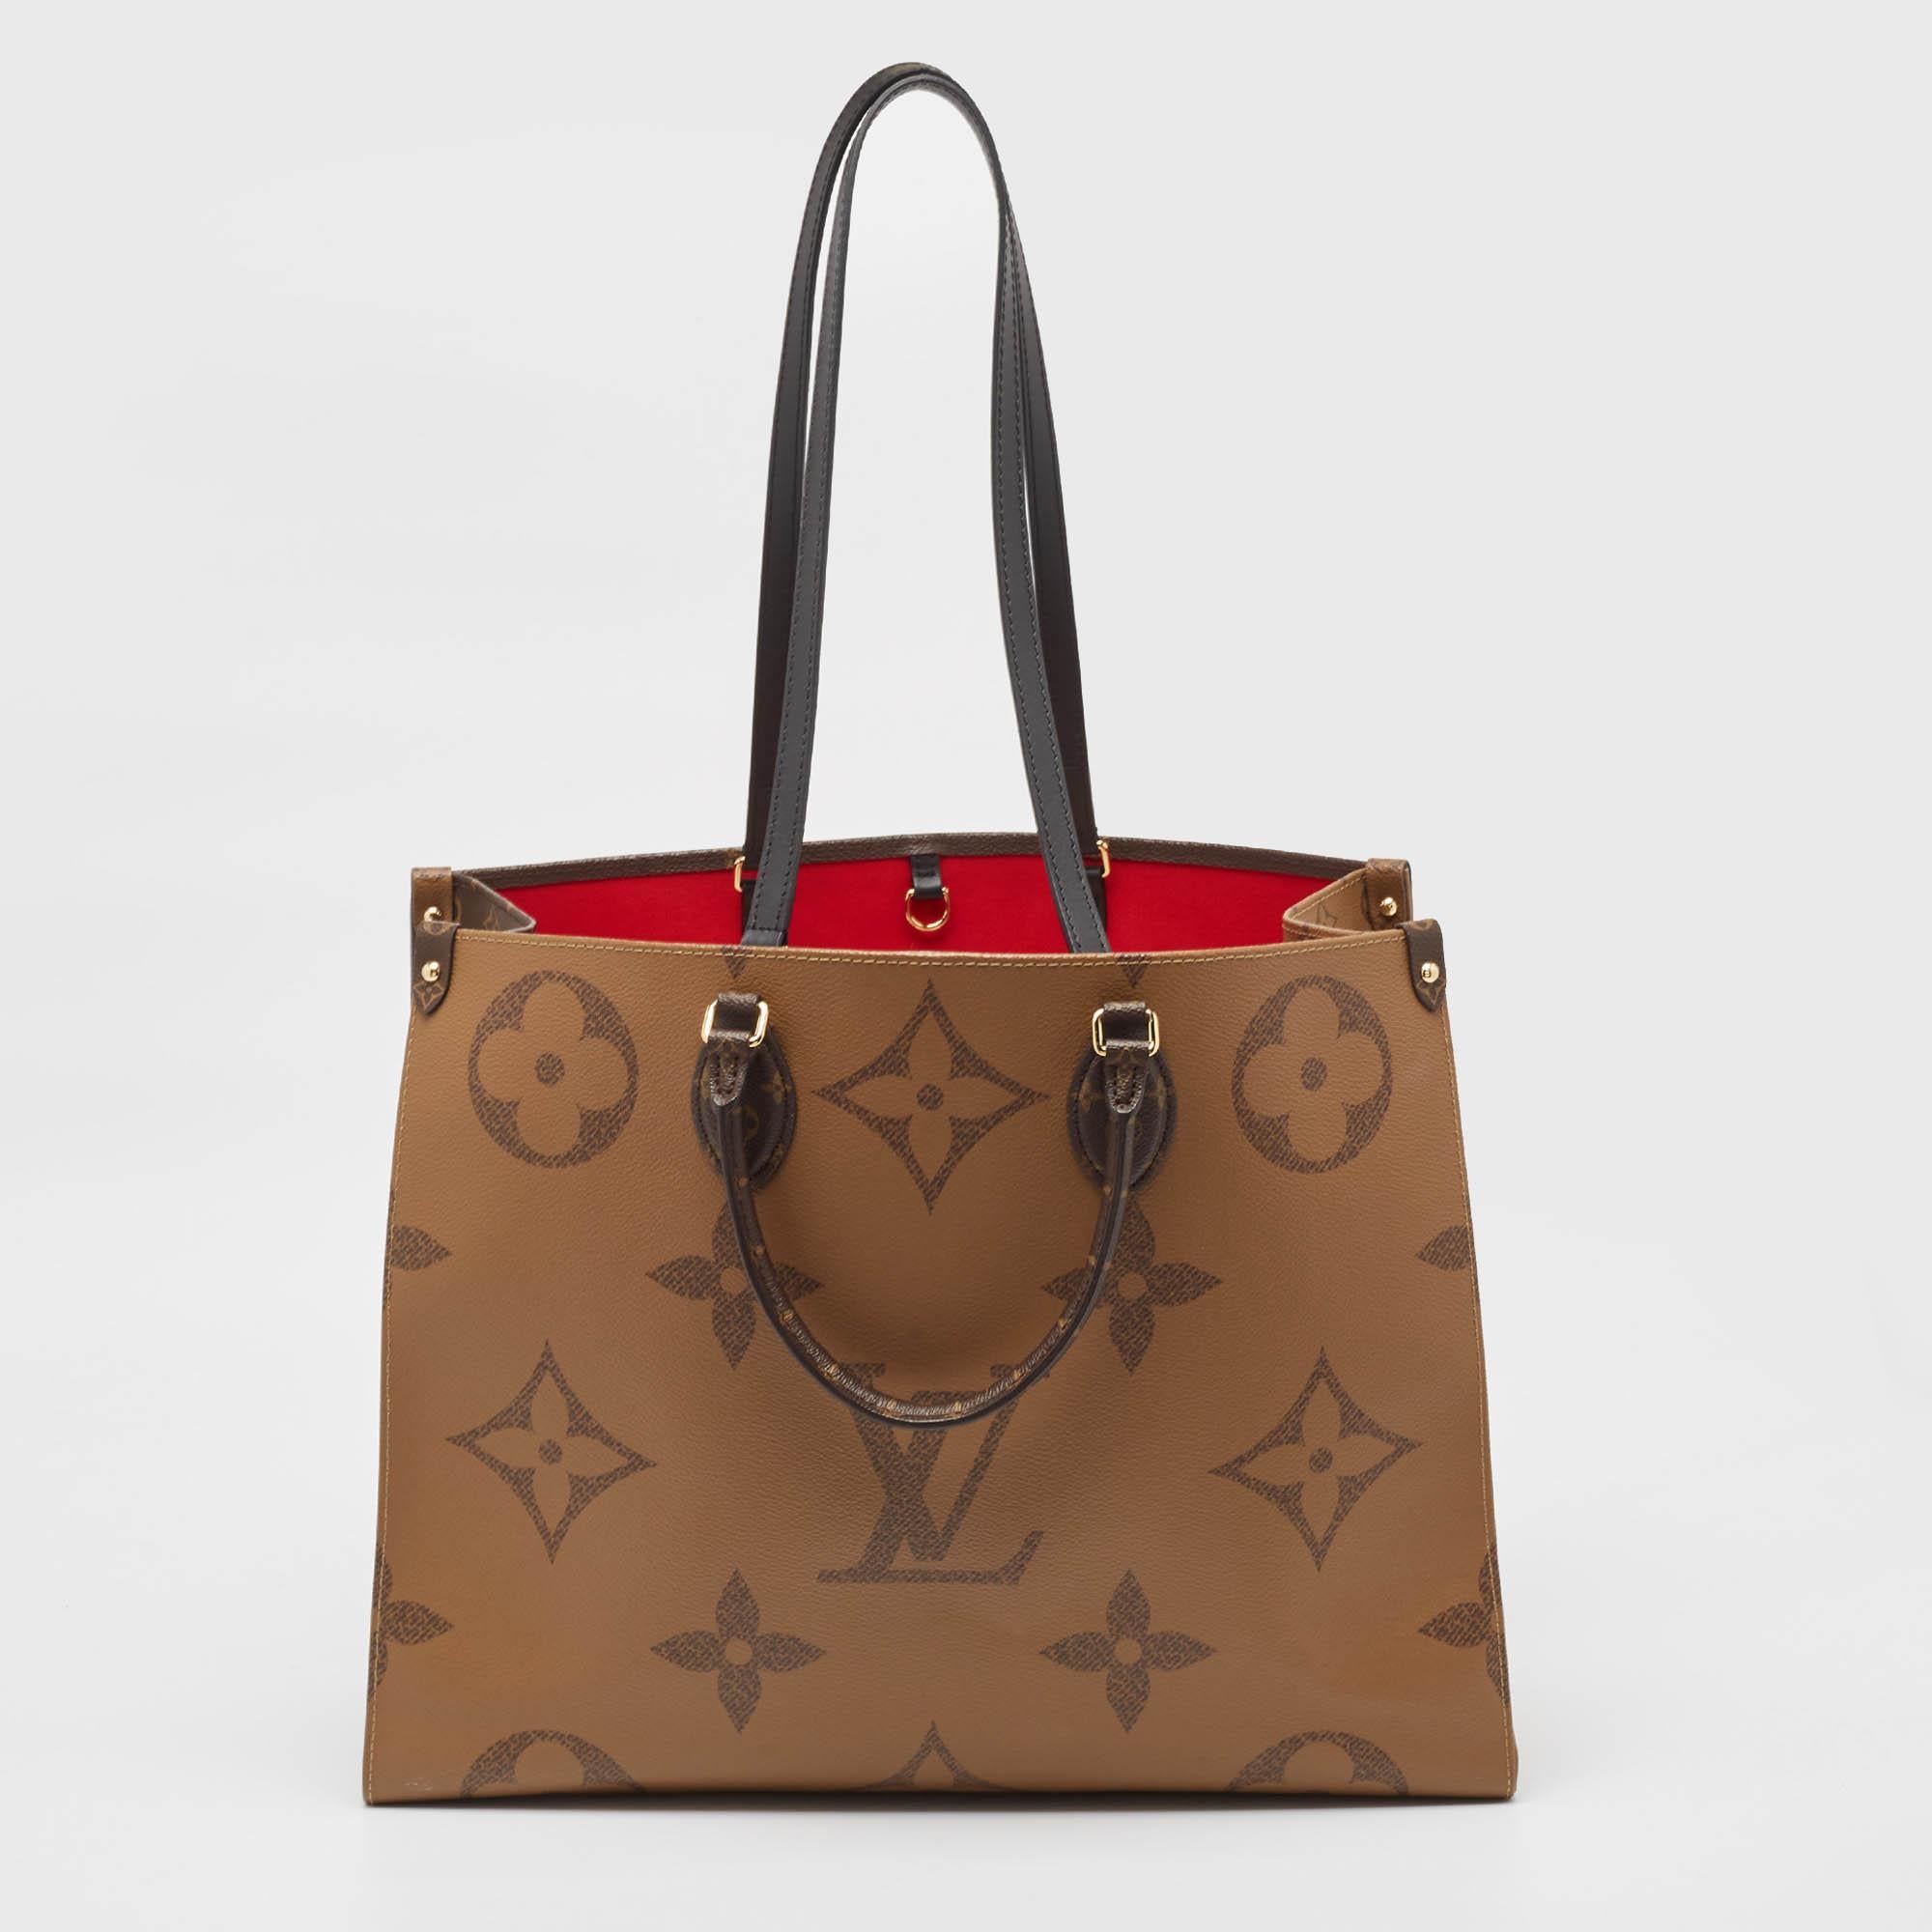 Aus der Monogram Giant Capsule Collection von Louis Vuitton stammt diese Onthego-Tasche, die das kultige Muster in einem neuen Stil präsentiert. Es zeigt das charakteristische Logo und die Blumenmotive in einem übergroßen Format. Bei dieser Kreation